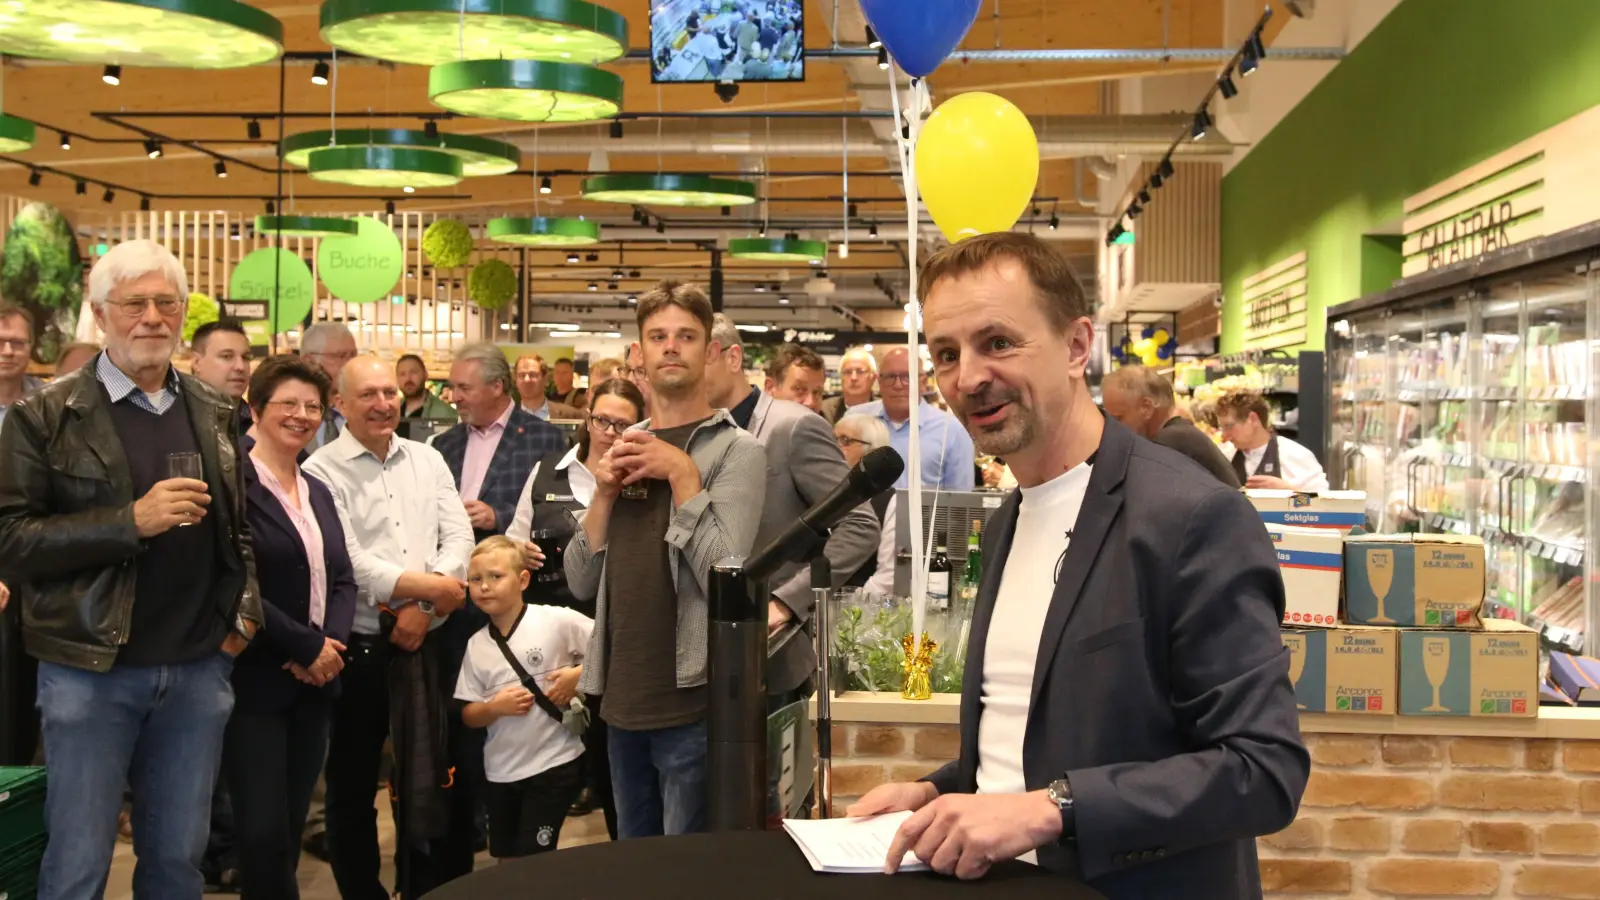 Ulf-U. Plath vom Edeka-Vorstandsteam gratuliert der Familie Kreisel zur Neueröffnung des Marktes in Lauenau. (Foto: bb)